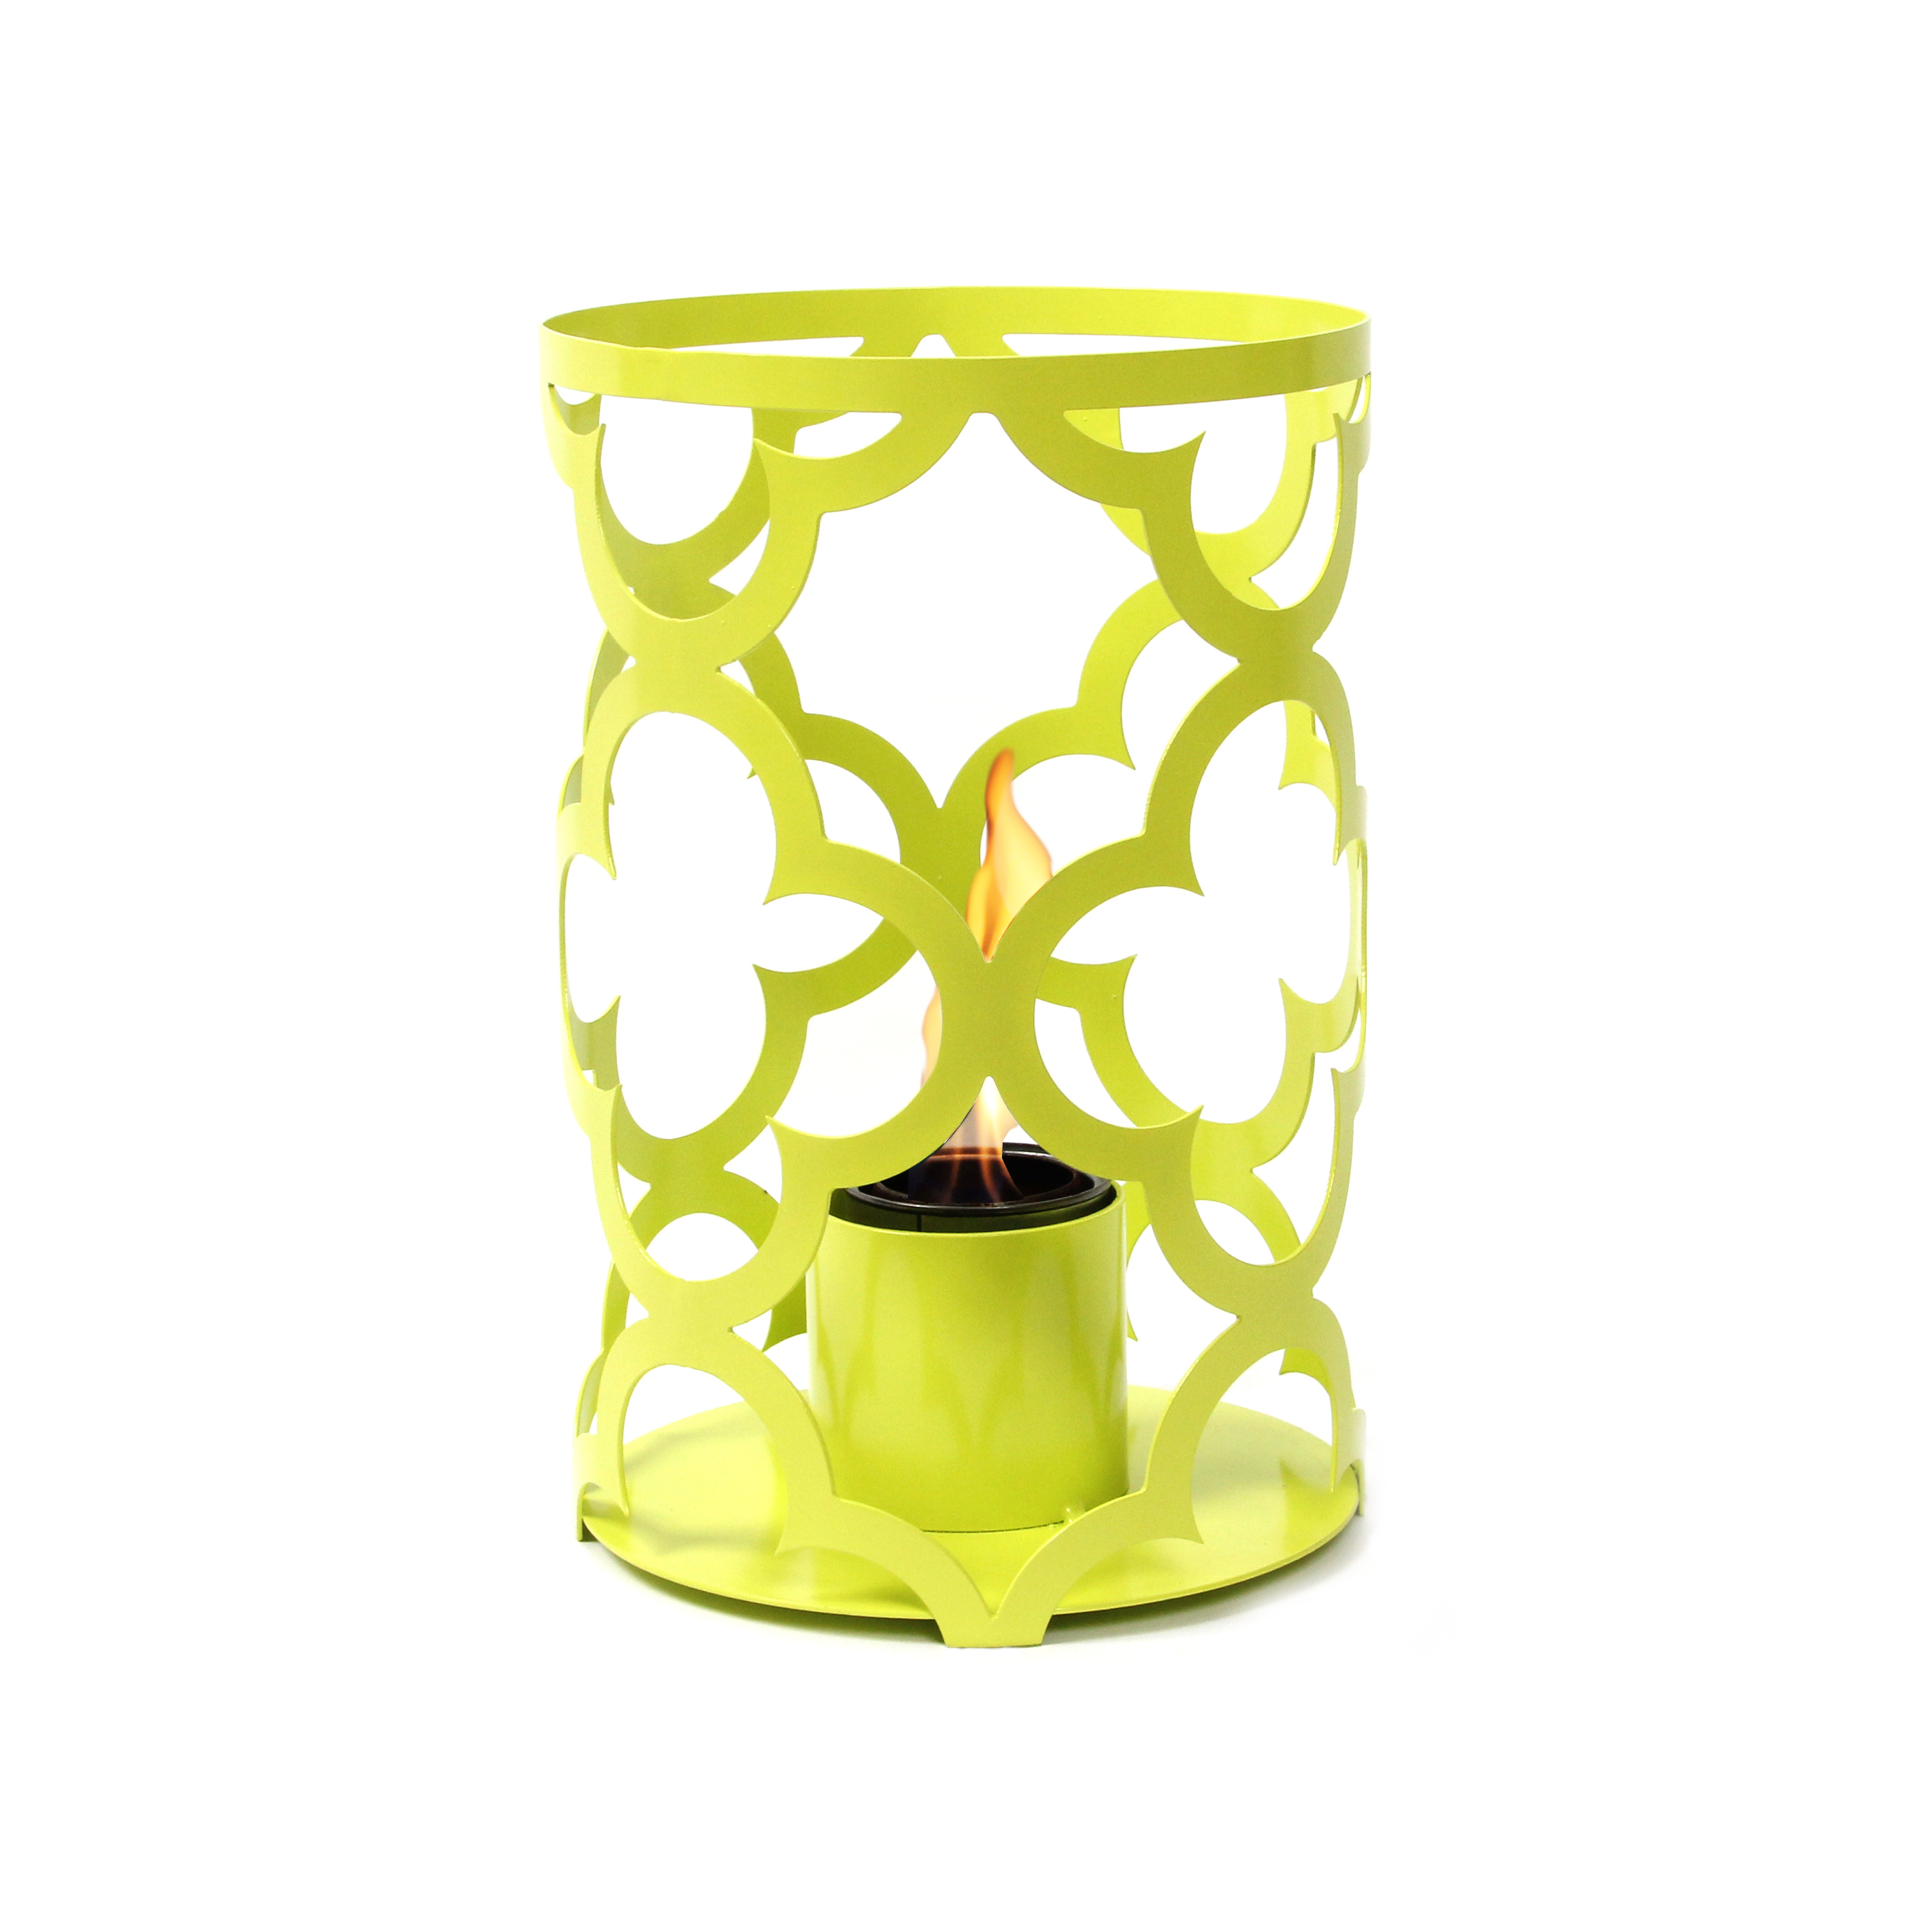 SunJel Mediterranean Large Lantern - sweet Lime